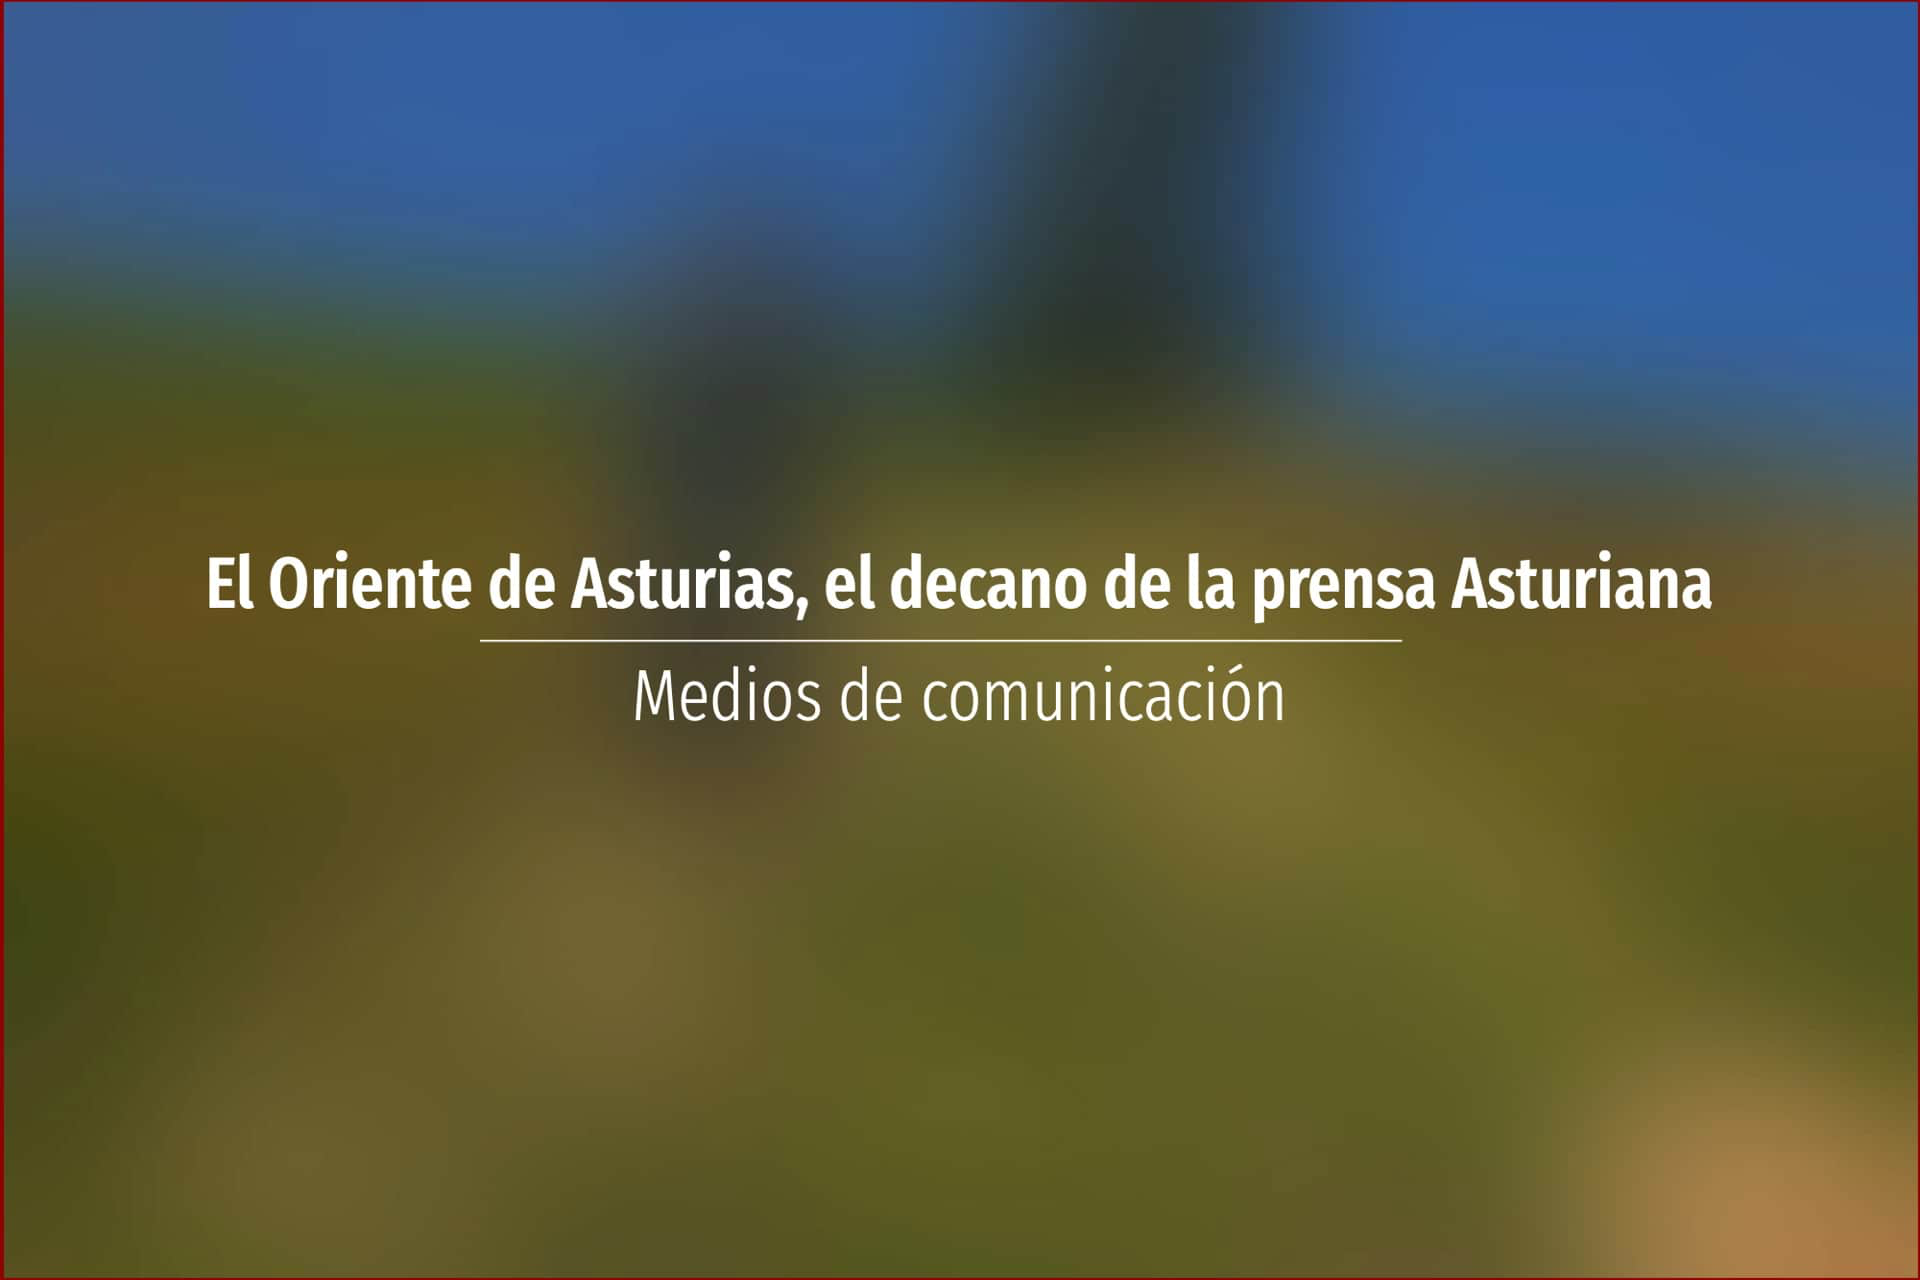 El Oriente de Asturias, el decano de la prensa Asturiana